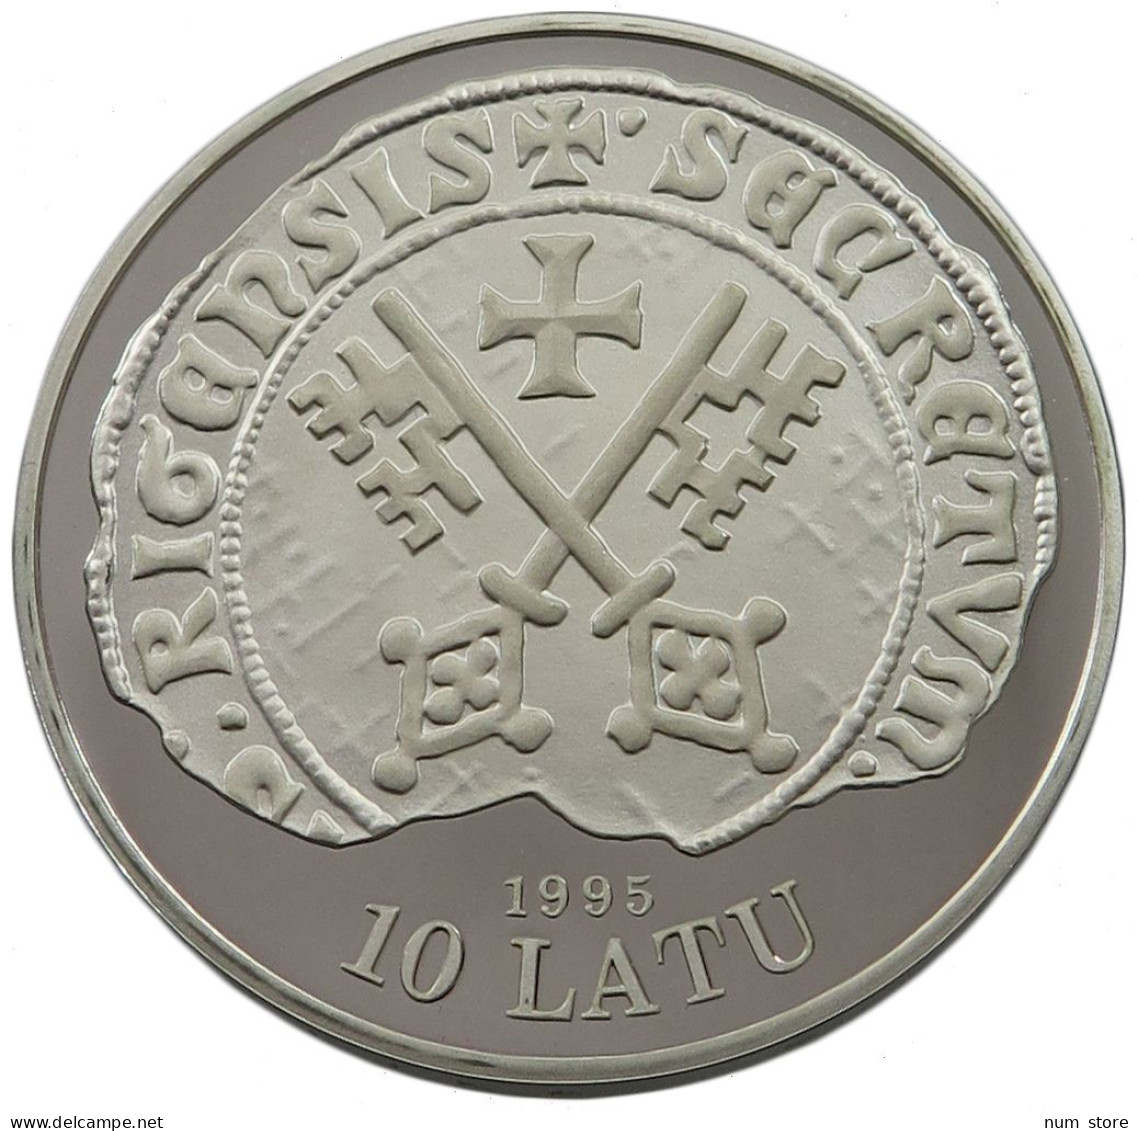 LATVIA 10 LATU 1995 RIGA #w032 0317 - Latvia